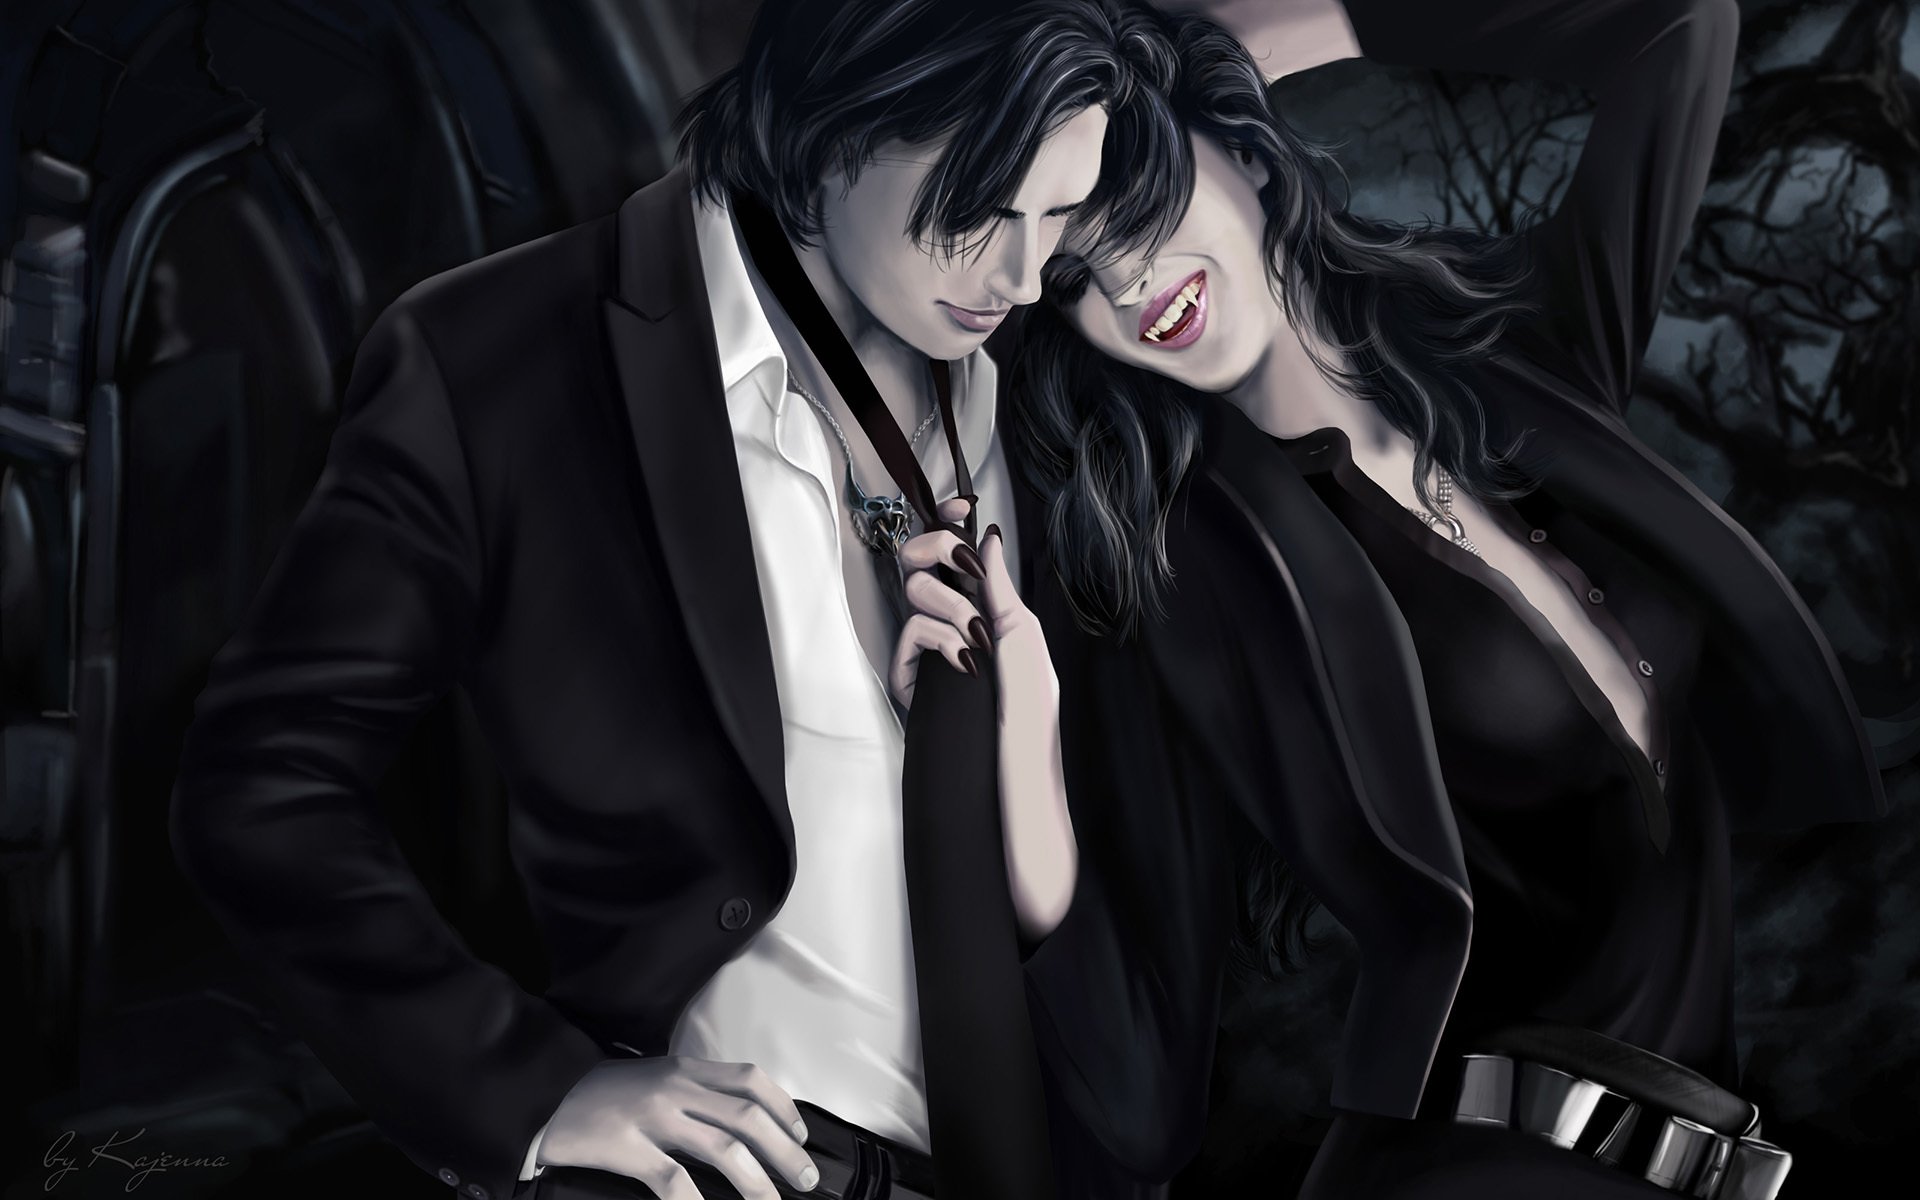 Фантастика, парень и девушка пара вампиры Обои на рабочий стол.